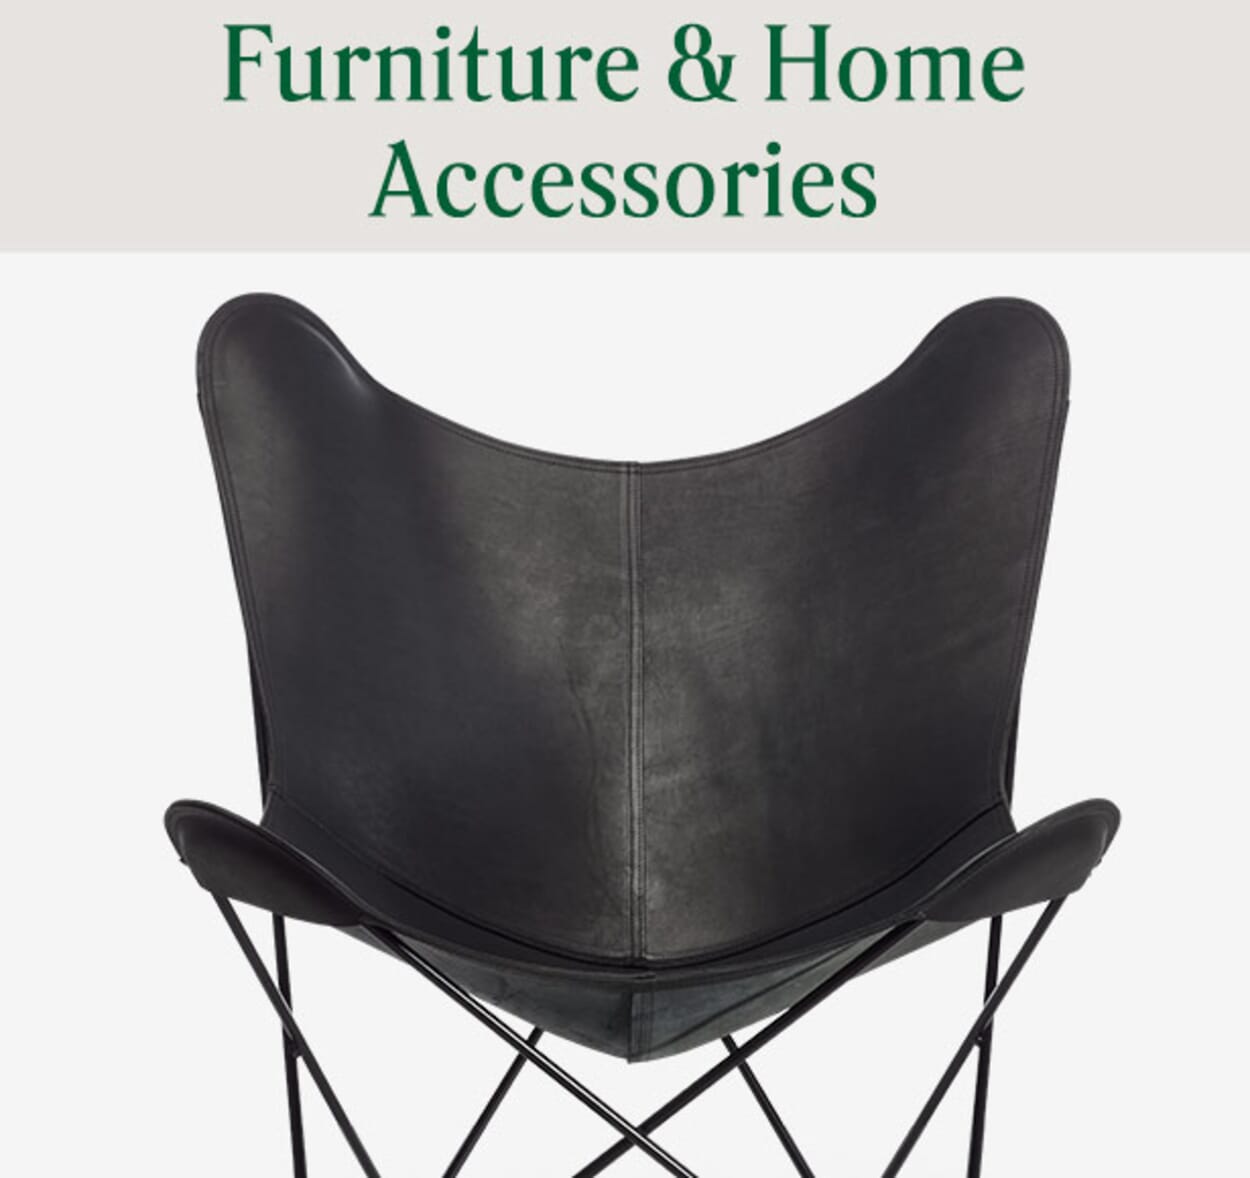 Furniture & Home Accessories